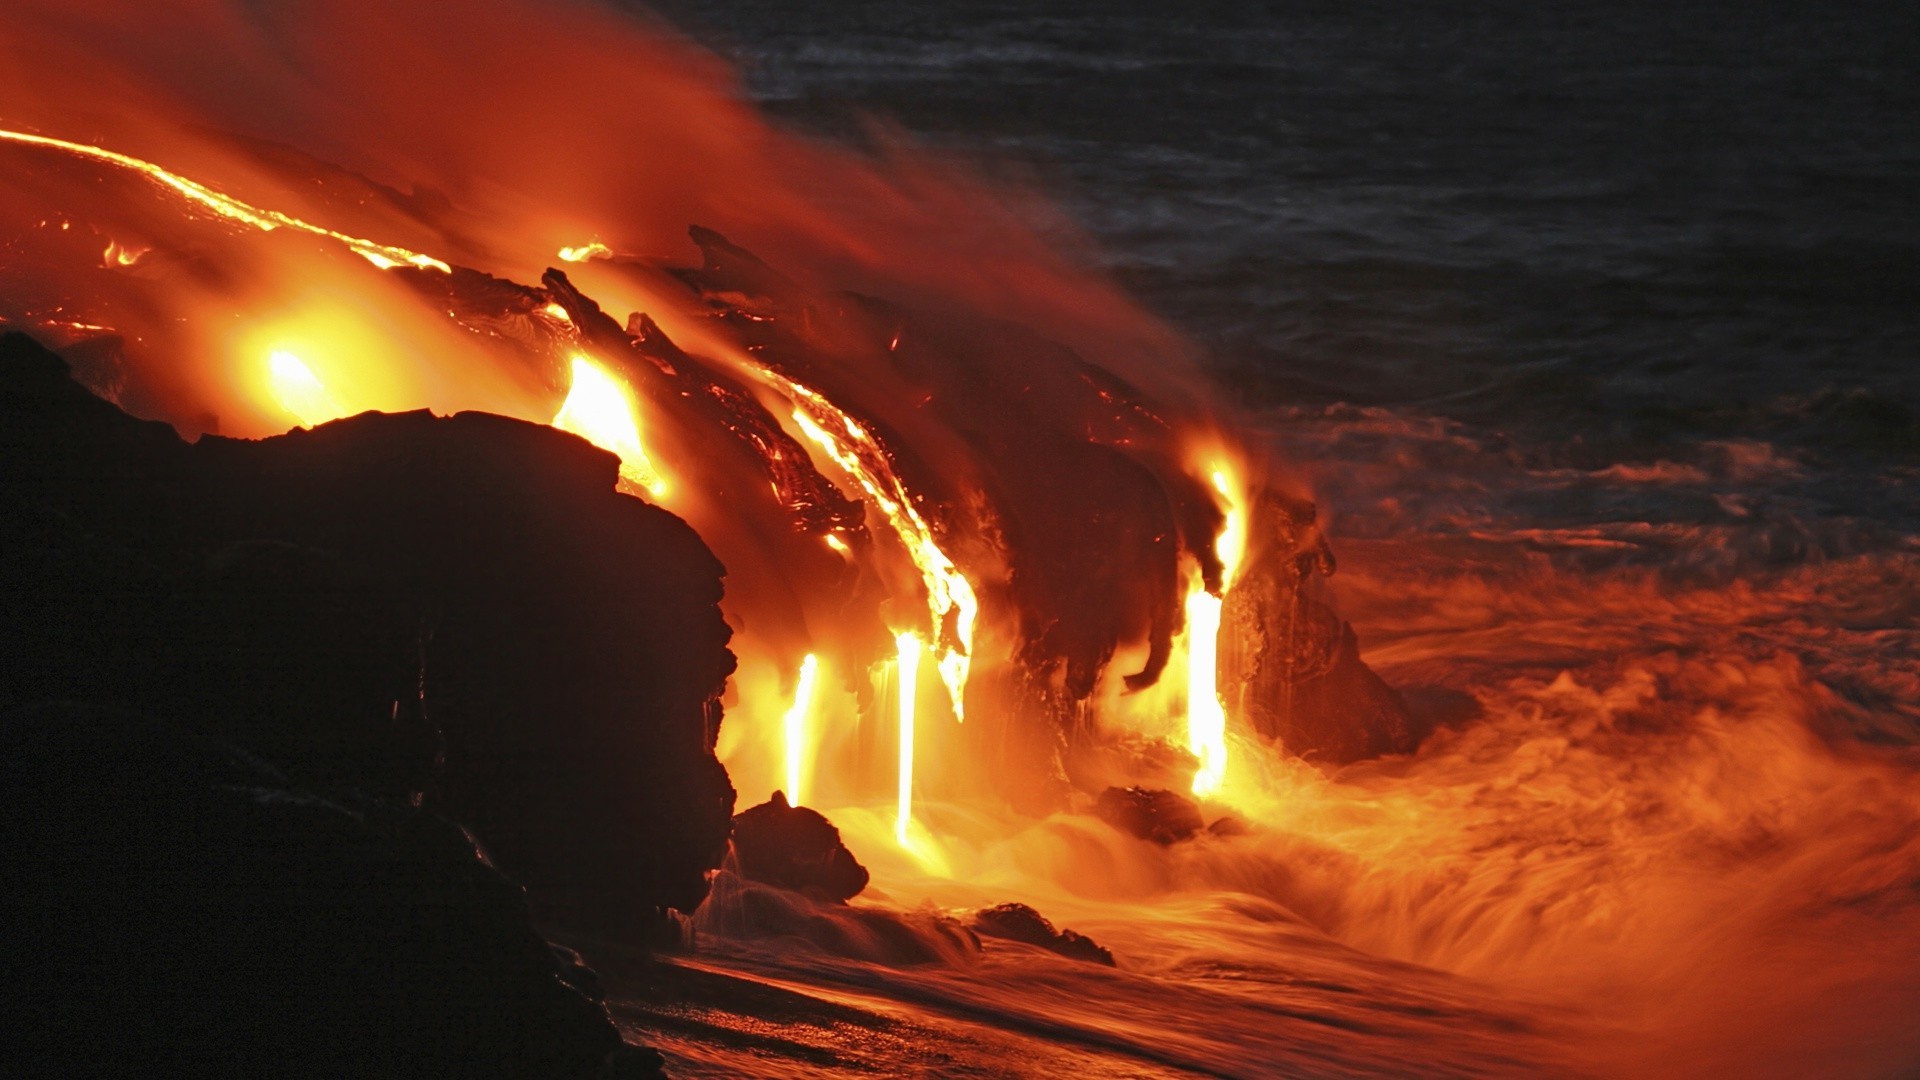 знаменитые места пламя закат вечером бедствие горячая извержение рассвет интенсивность дым свет пейзаж энергии вулкан опасность